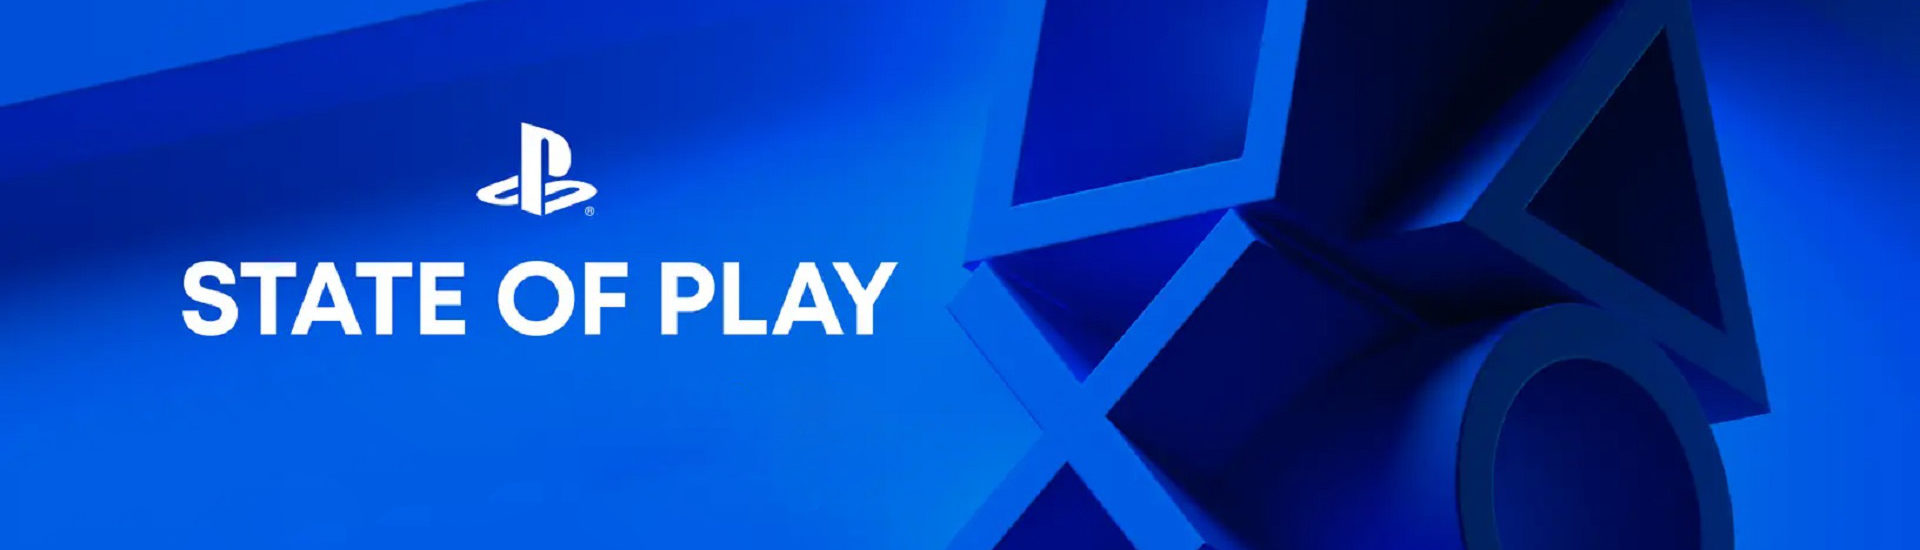 Sony: Neue Ausgabe der State of Play angekündigt